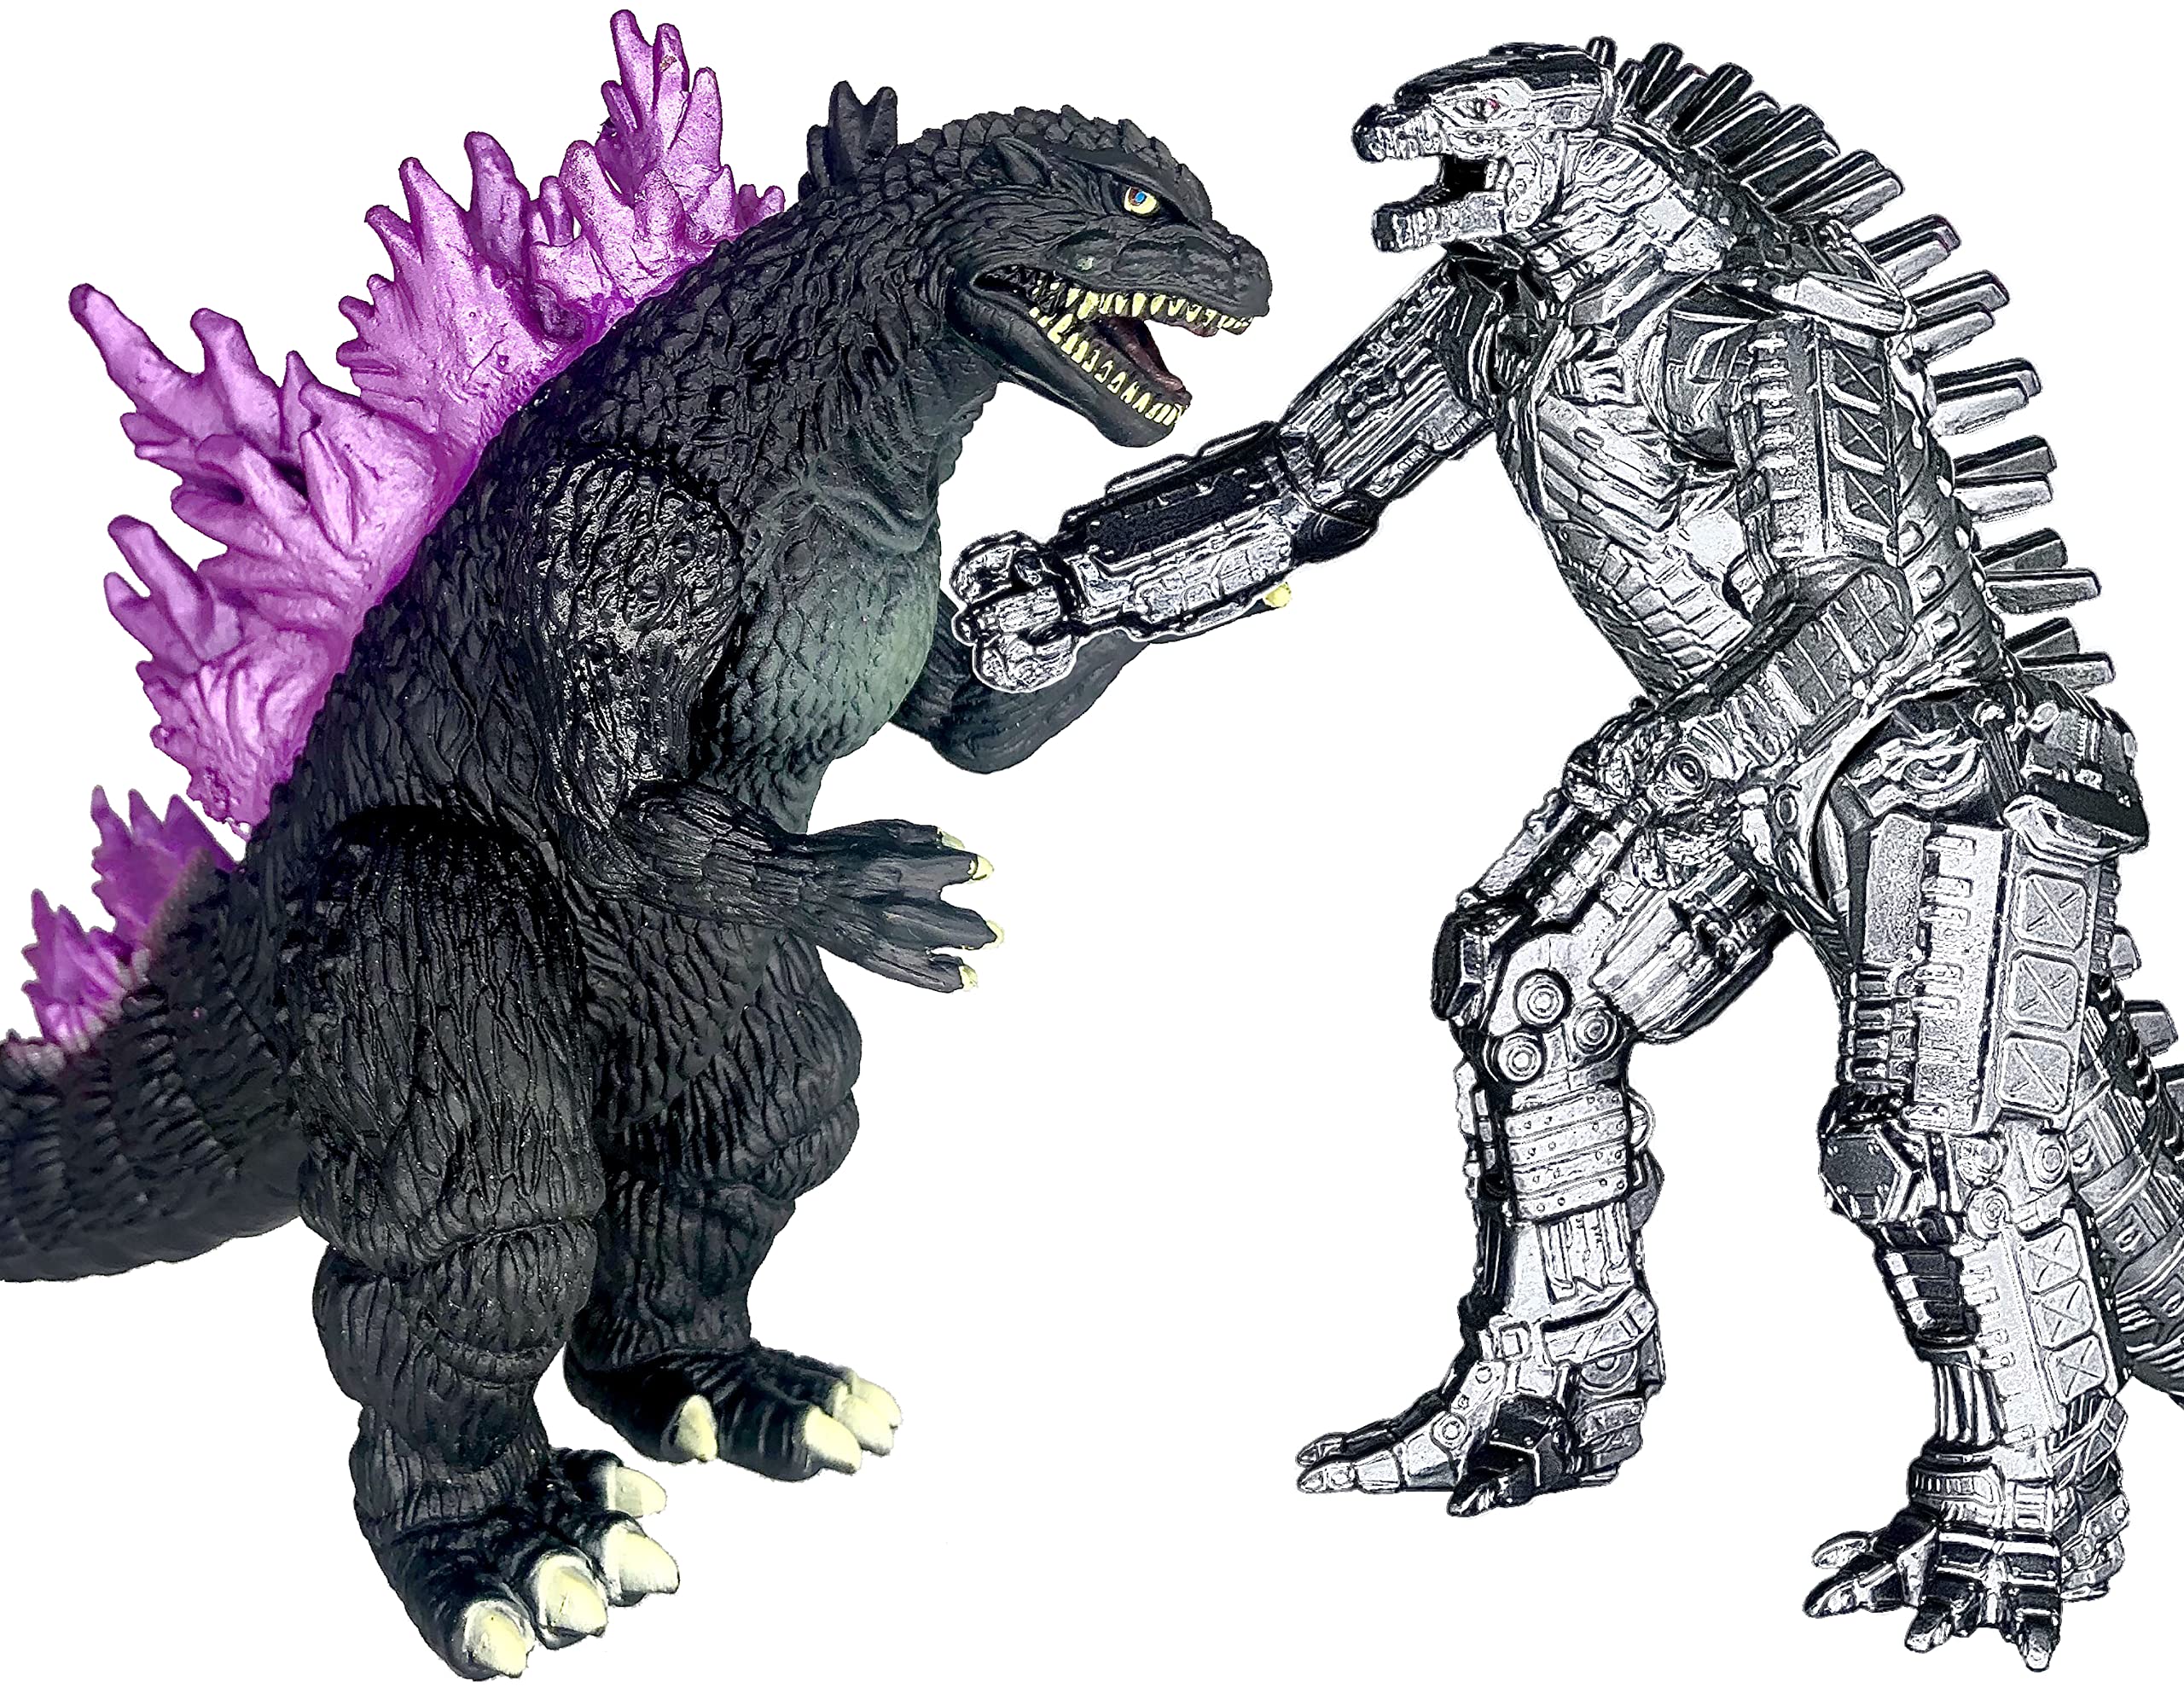 Set Godzilla: Bộ sưu tập của các chàng quái vật huyền thoại luôn là sự quan tâm của nhiều người. Hãy tham gia cùng chúng tôi để khám phá bộ sưu tập set Godzilla độc đáo và đẹp mắt đến từ các nghệ sĩ tài ba. Bạn sẽ không muốn bỏ lỡ cơ hội này đâu!